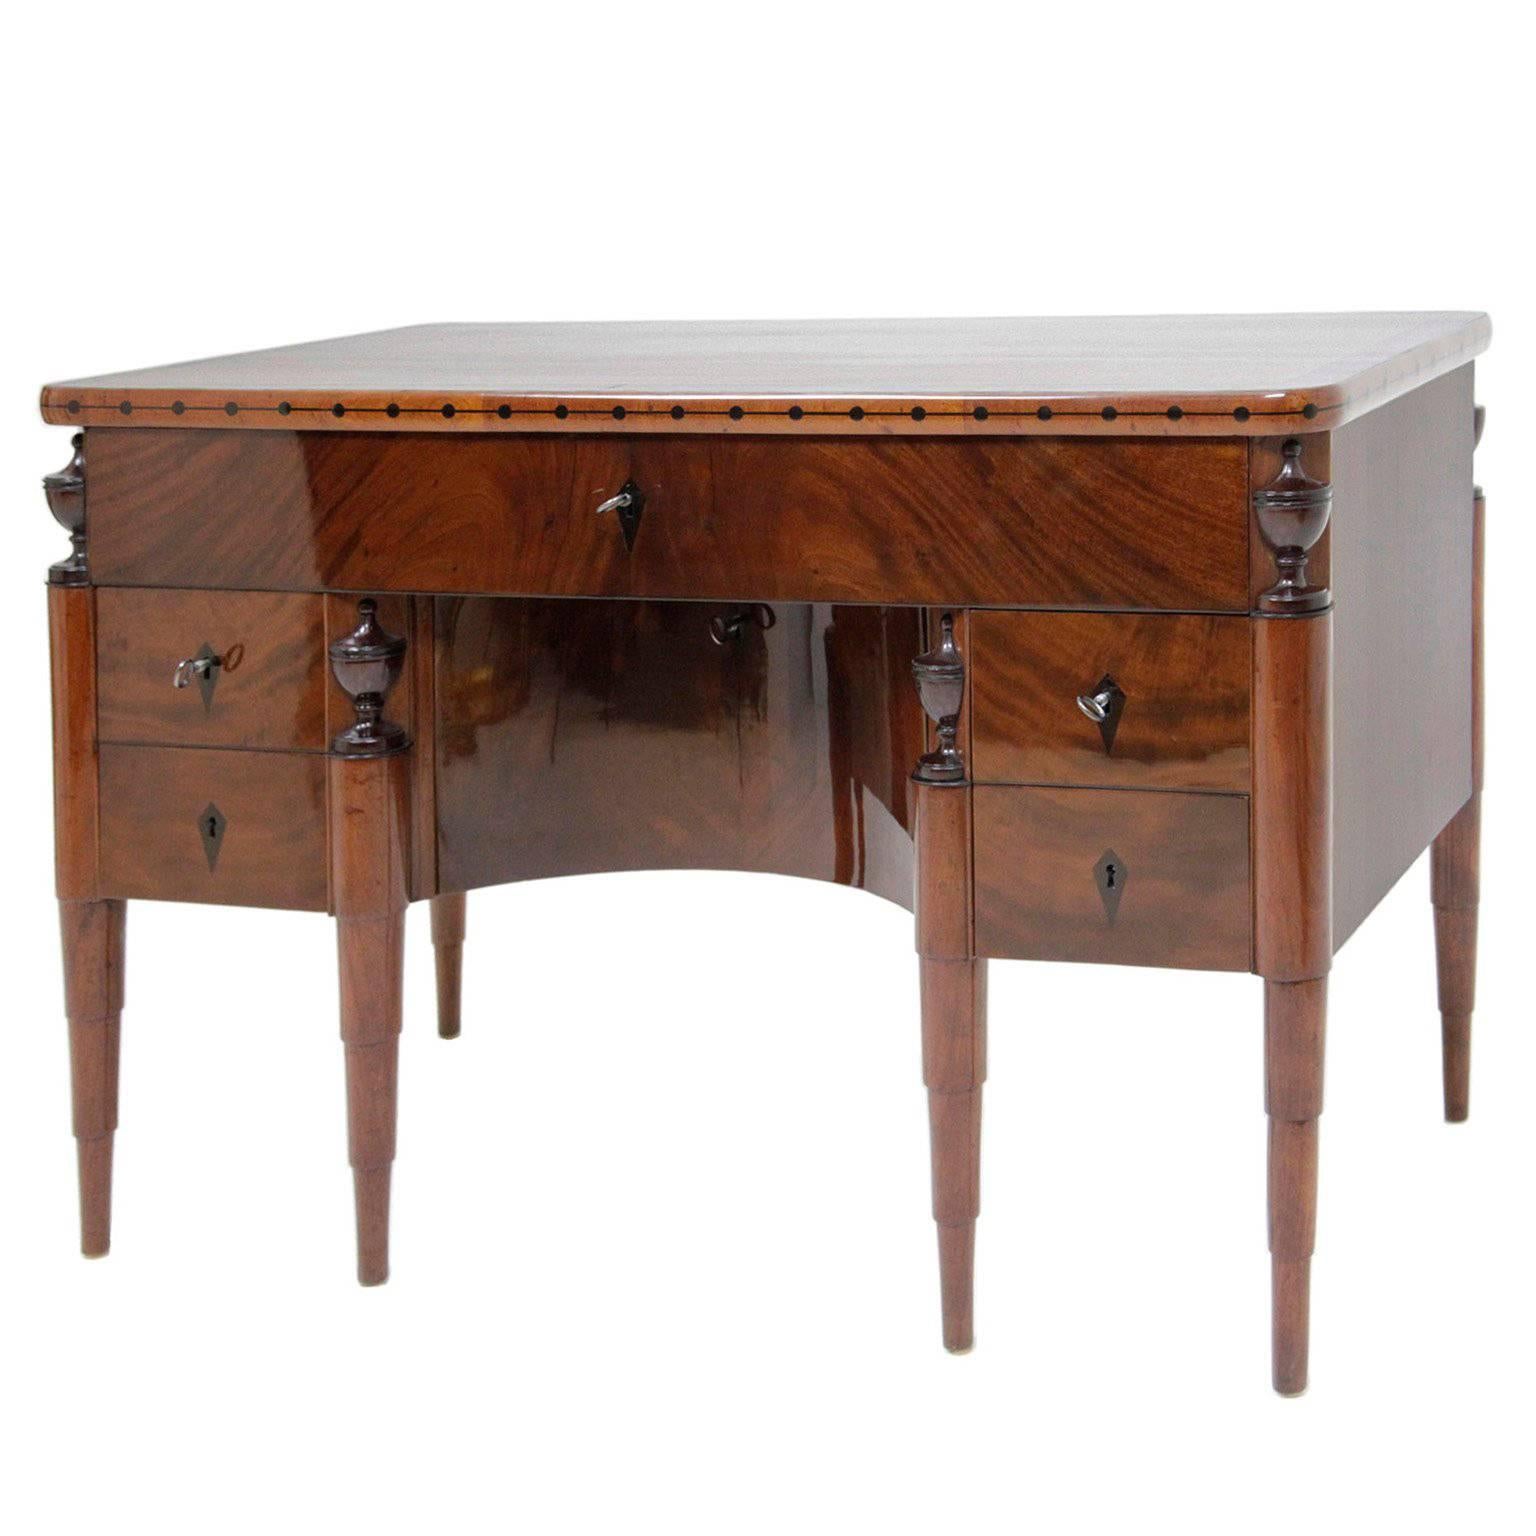 Neoclassical Desk, Balitc States, 1820s-1830s